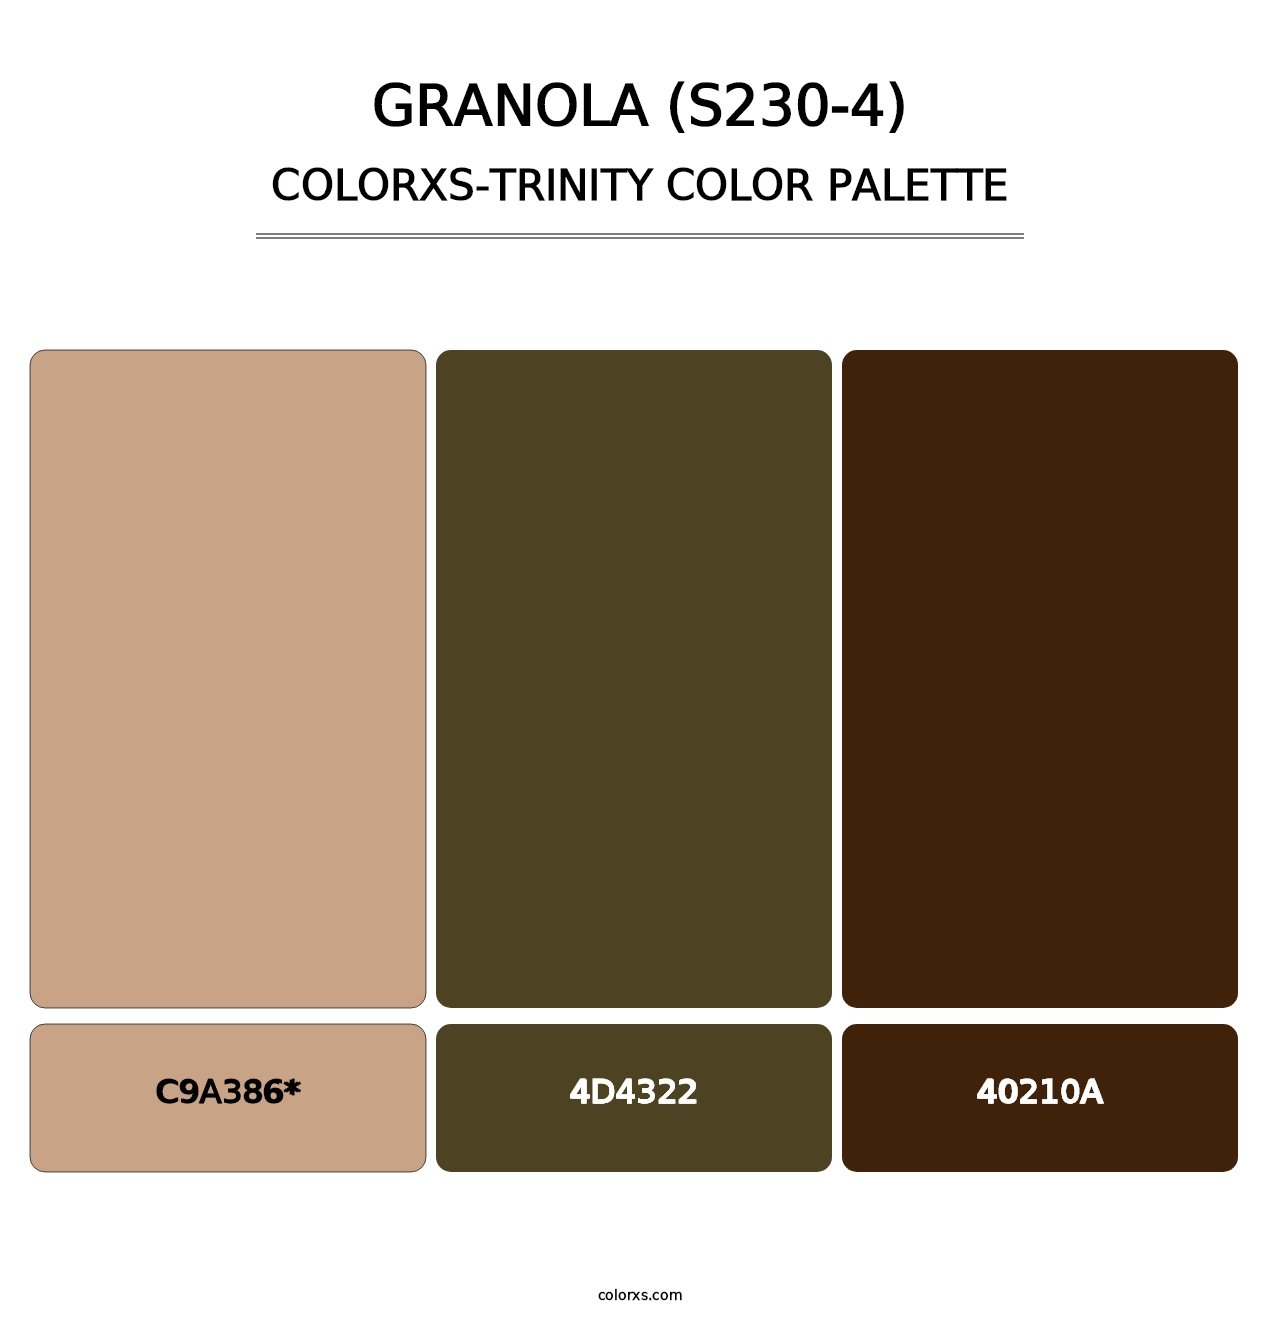 Granola (S230-4) - Colorxs Trinity Palette